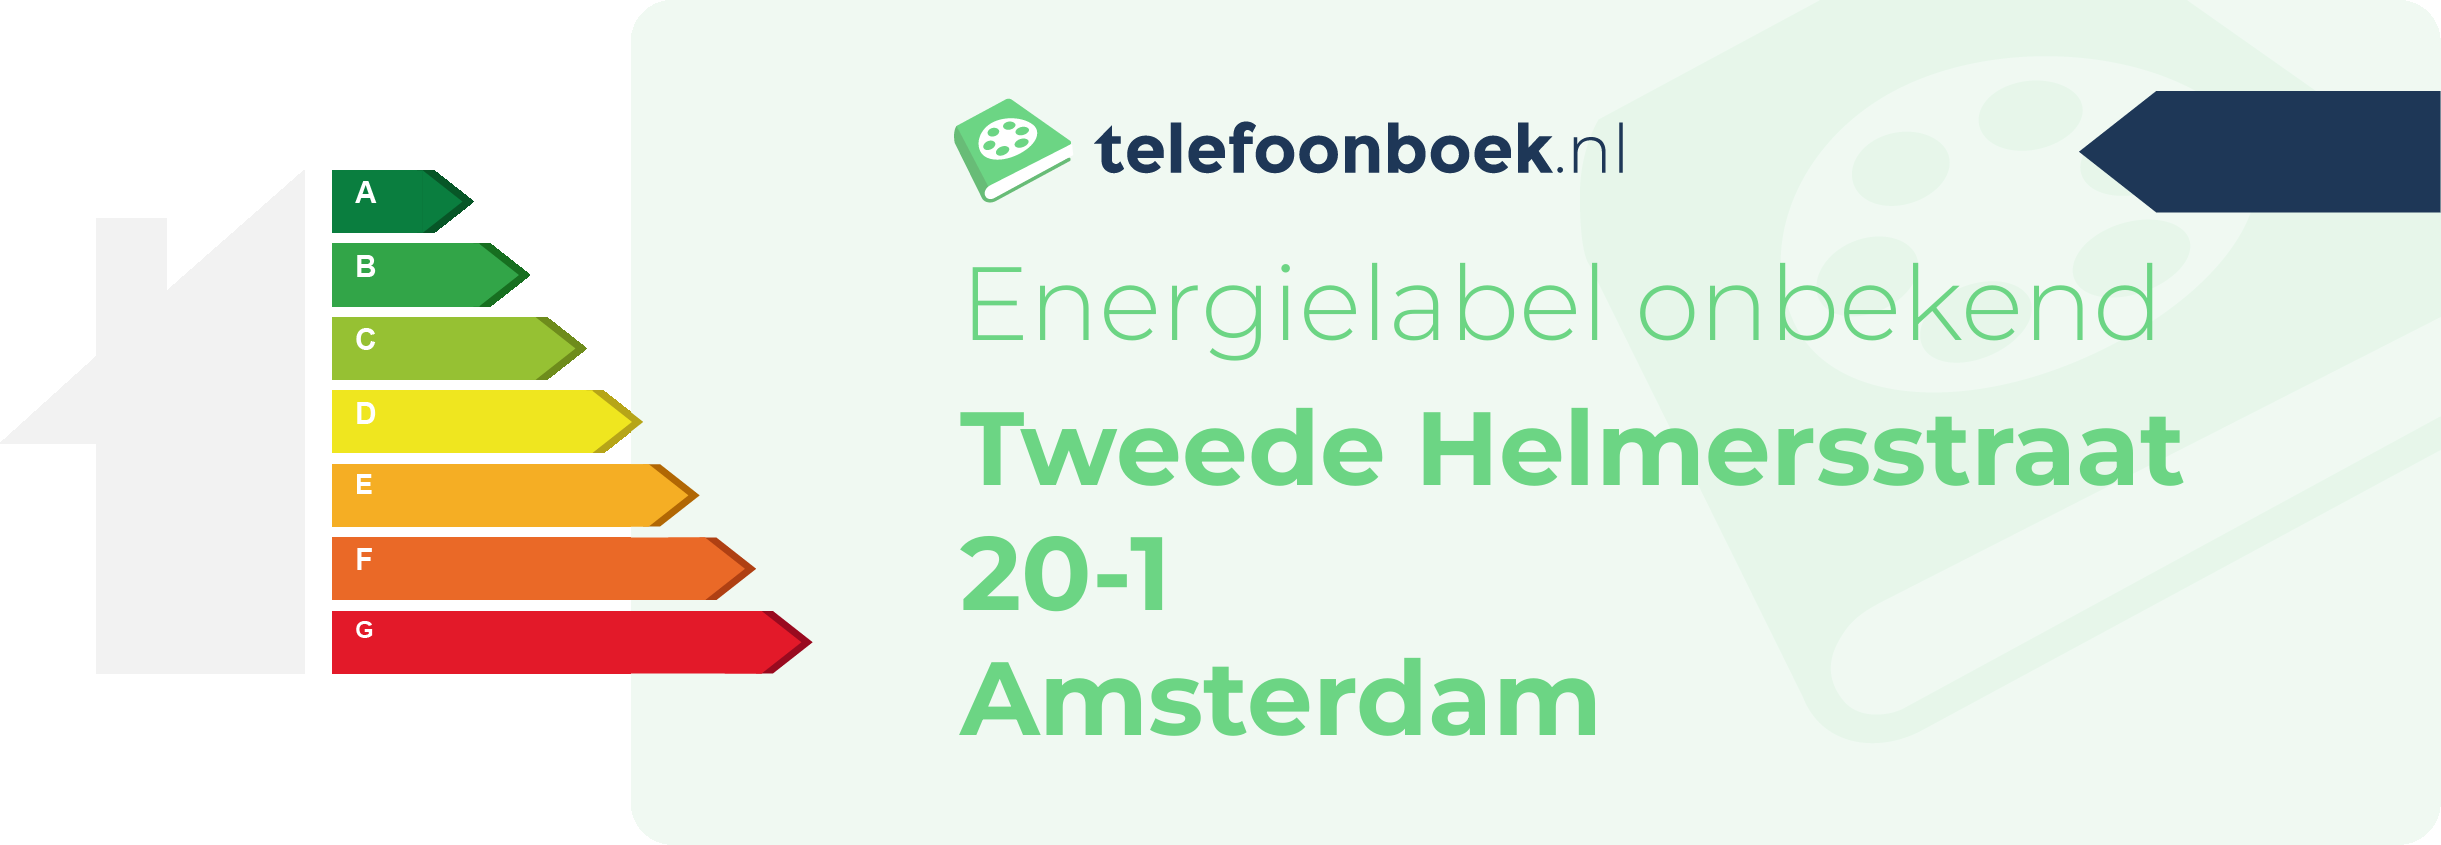 Energielabel Tweede Helmersstraat 20-1 Amsterdam